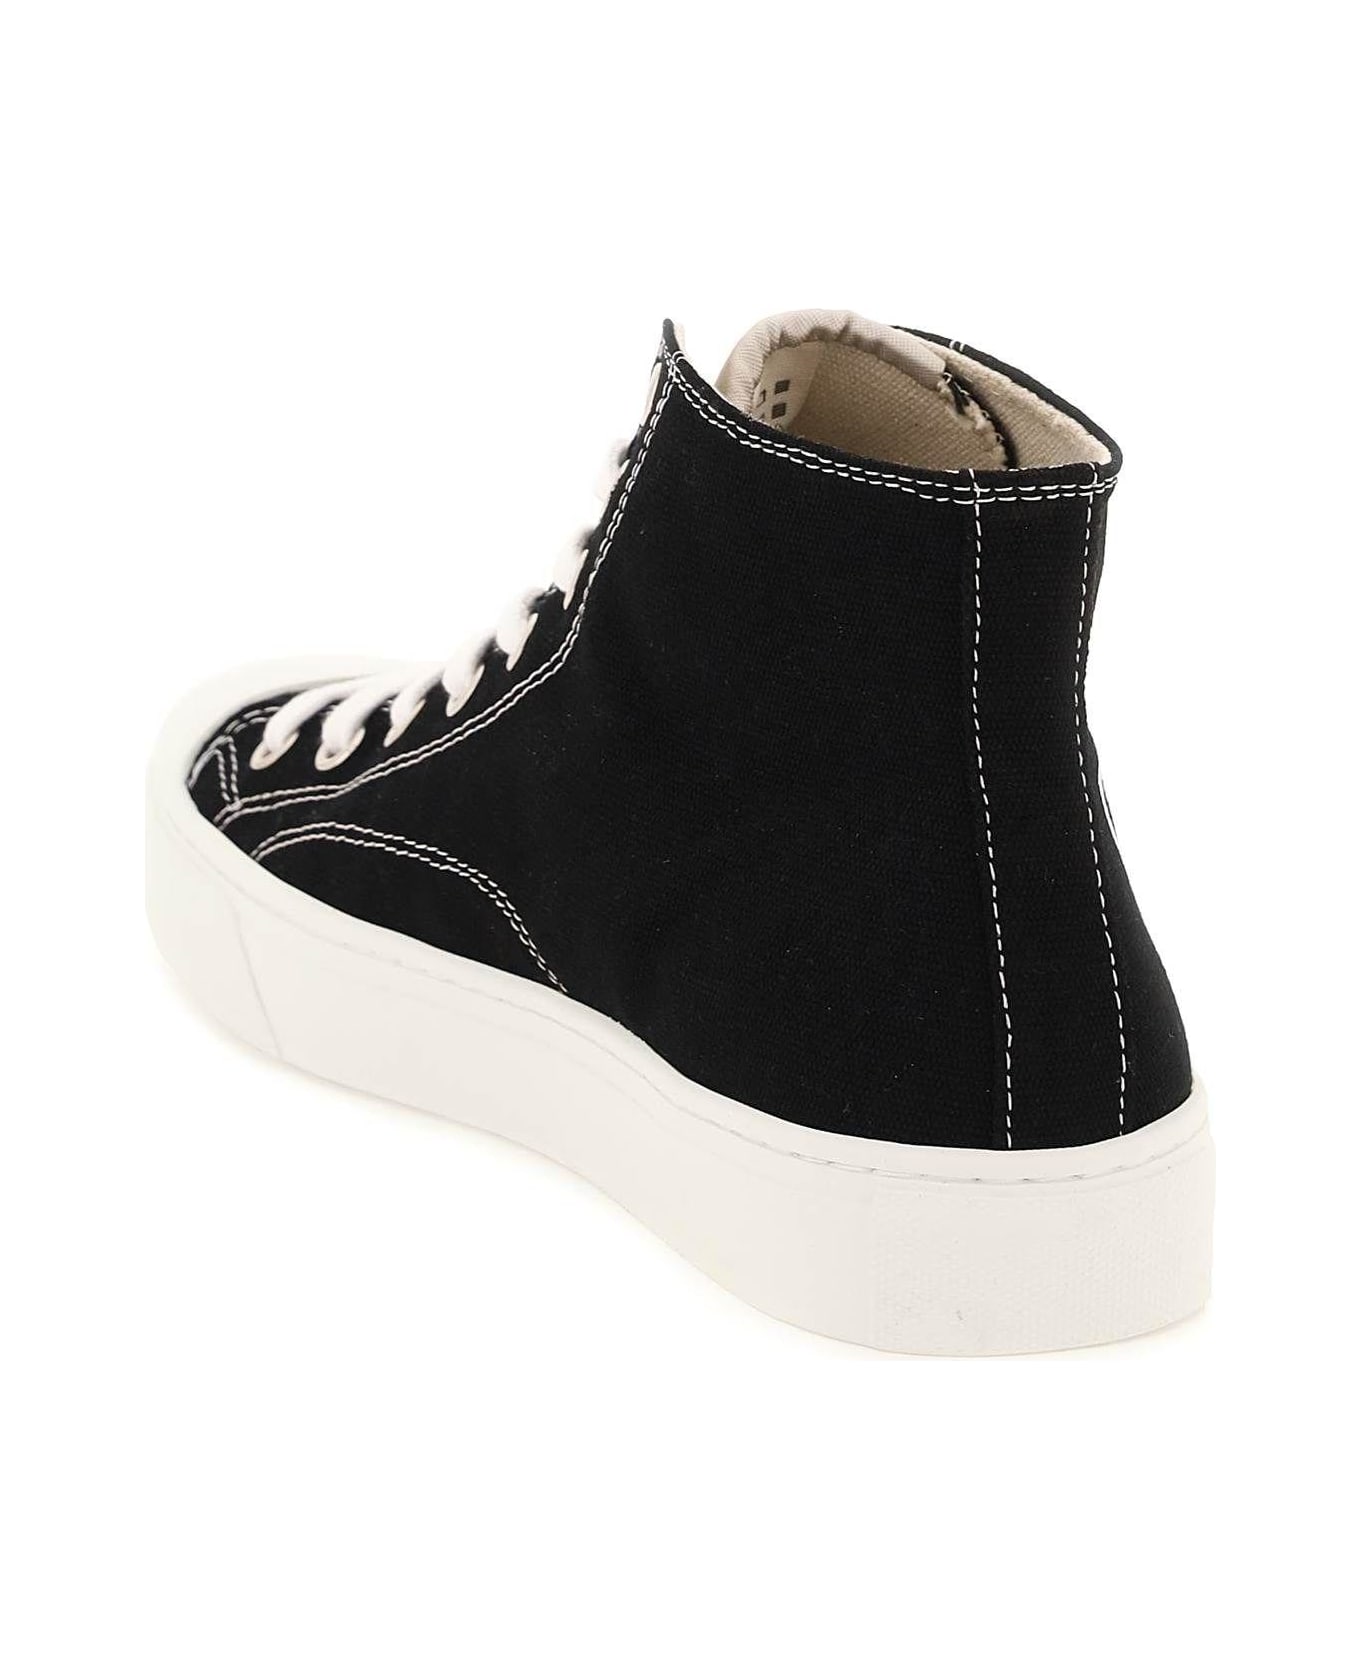 Vivienne Westwood Plimsoll High Top Canvas Sneakers - Nero スニーカー